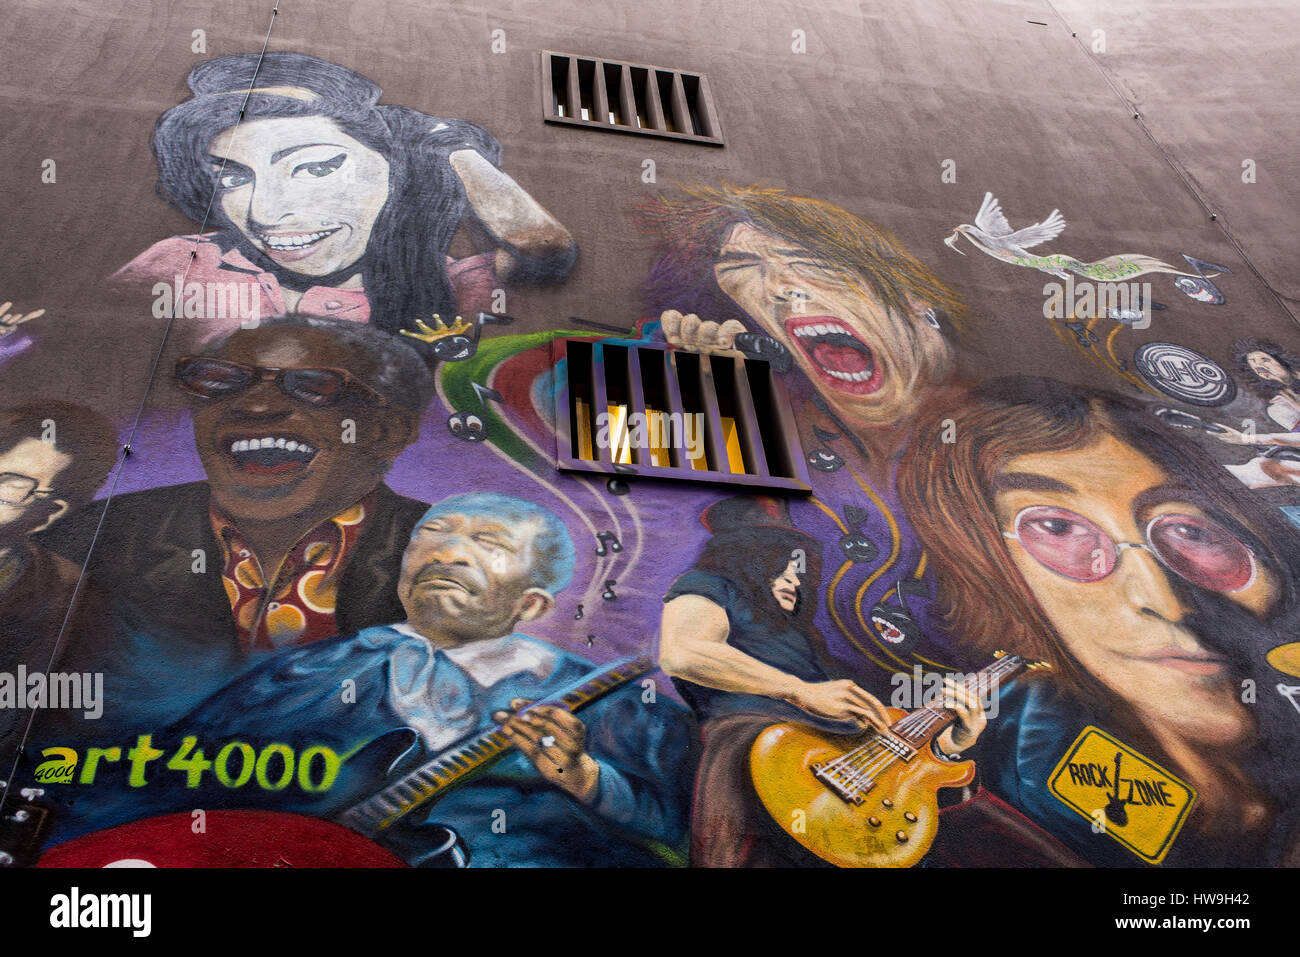 Le mur présente des portraits de rock stars comme Janis Joplin, Keith Richard, Mick Jagger, Morrison et les portes, Jimy Hendrix, les Who, Pearl Jam, Dave G Banque D'Images